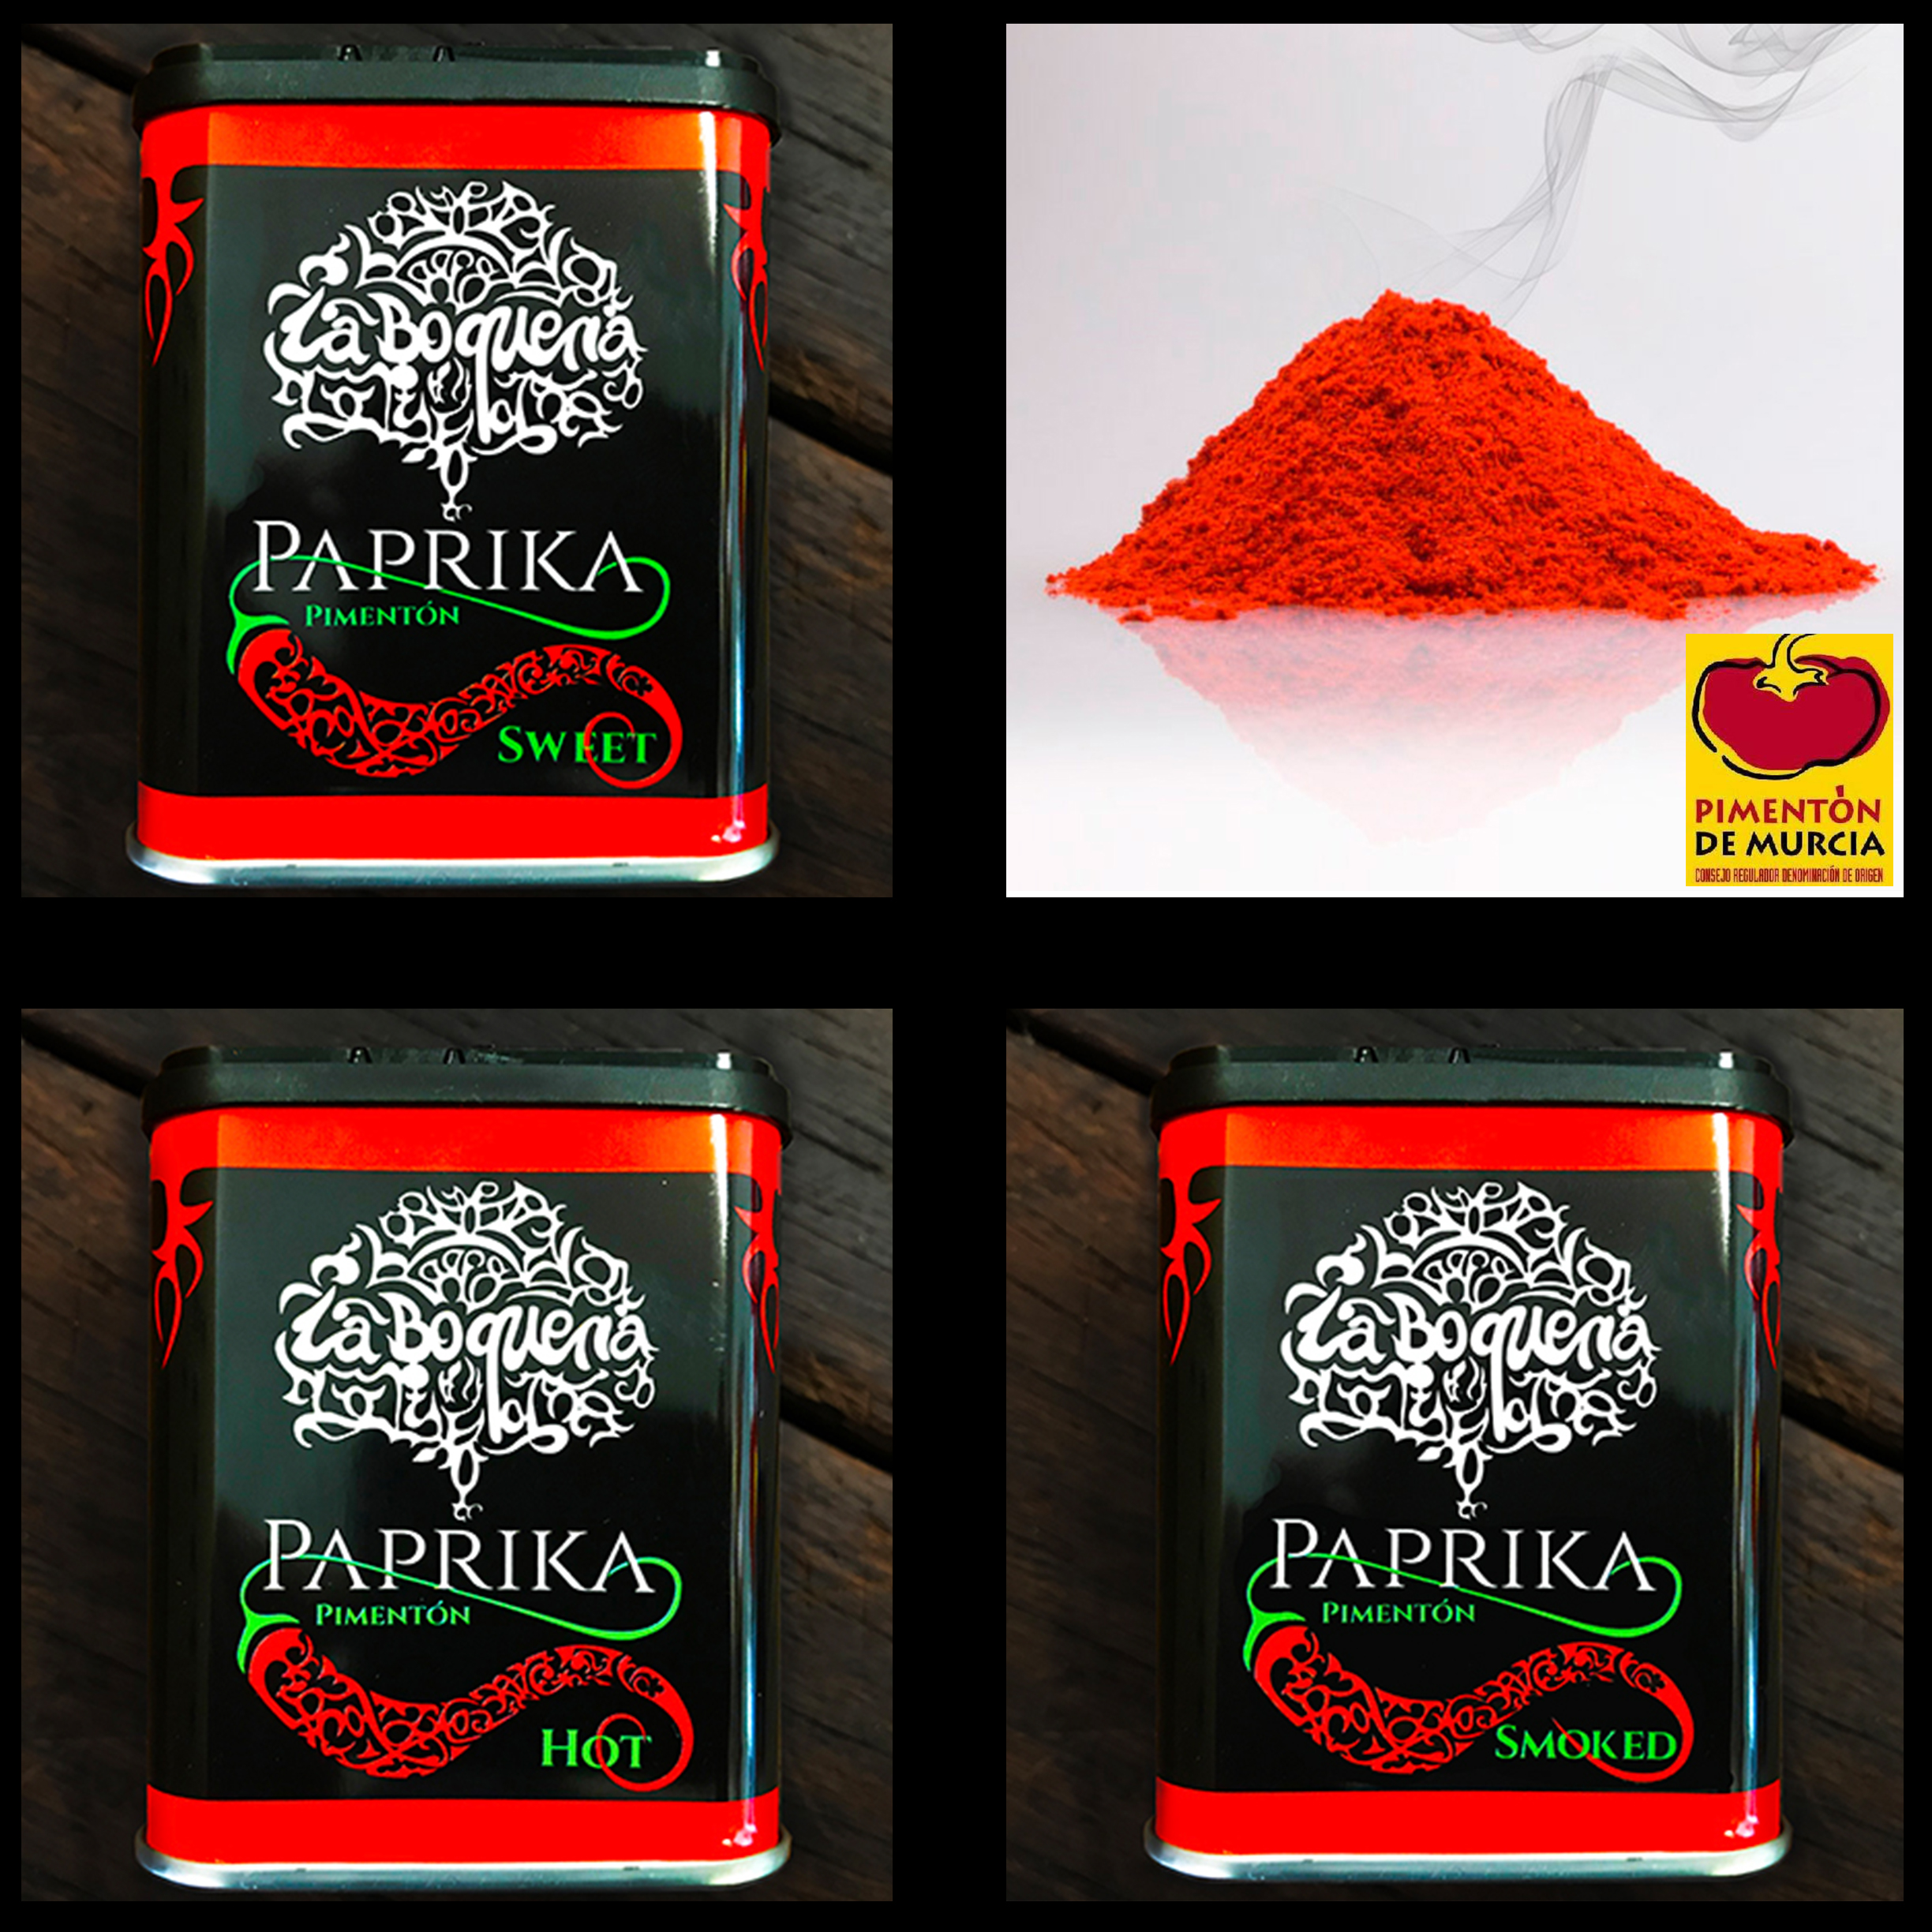 Spice - Paprika La Boqueria 75g